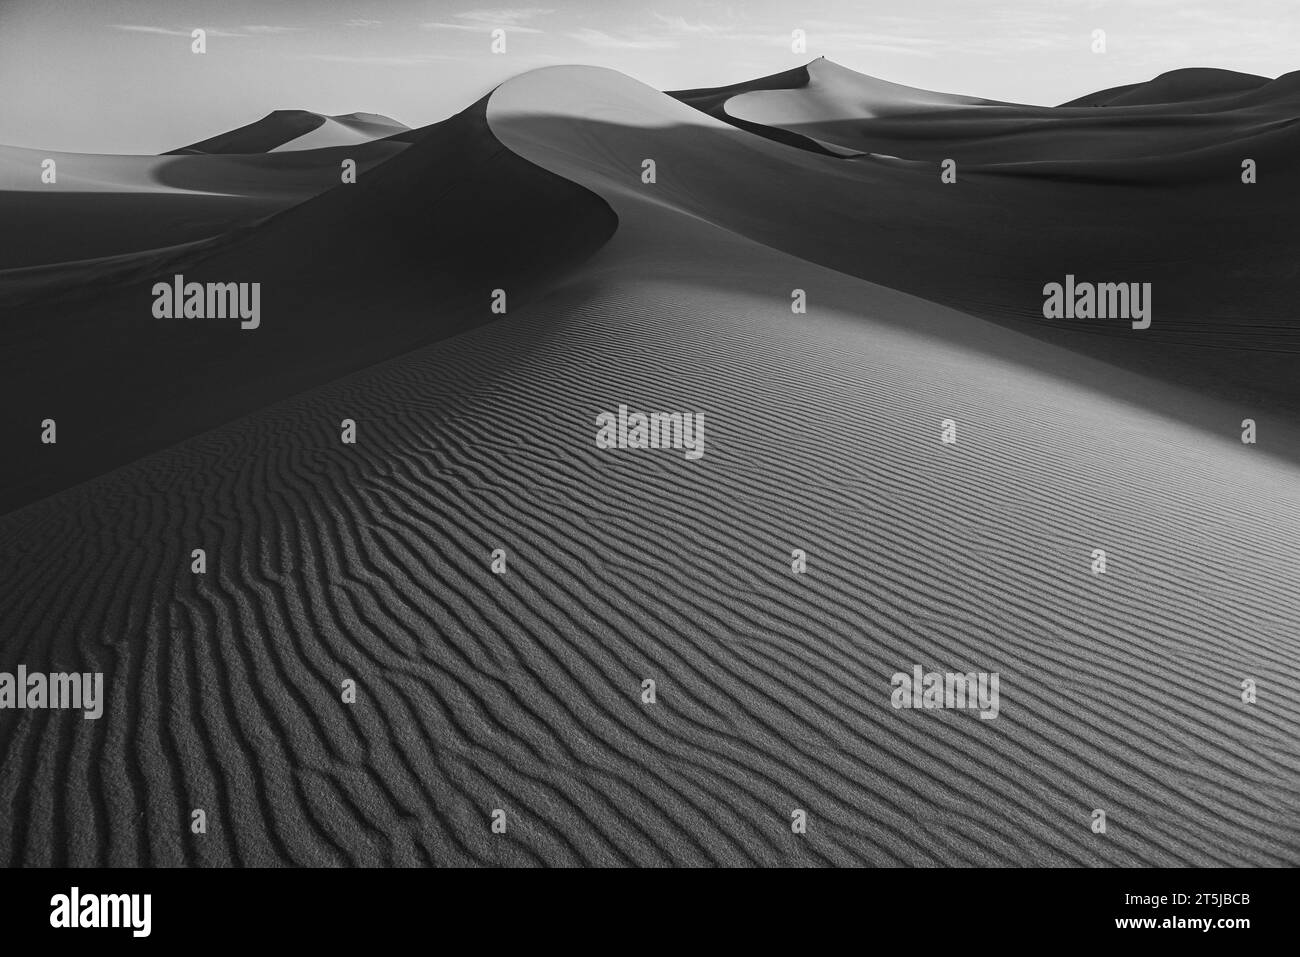 Sahara sand dunes Stock Photo